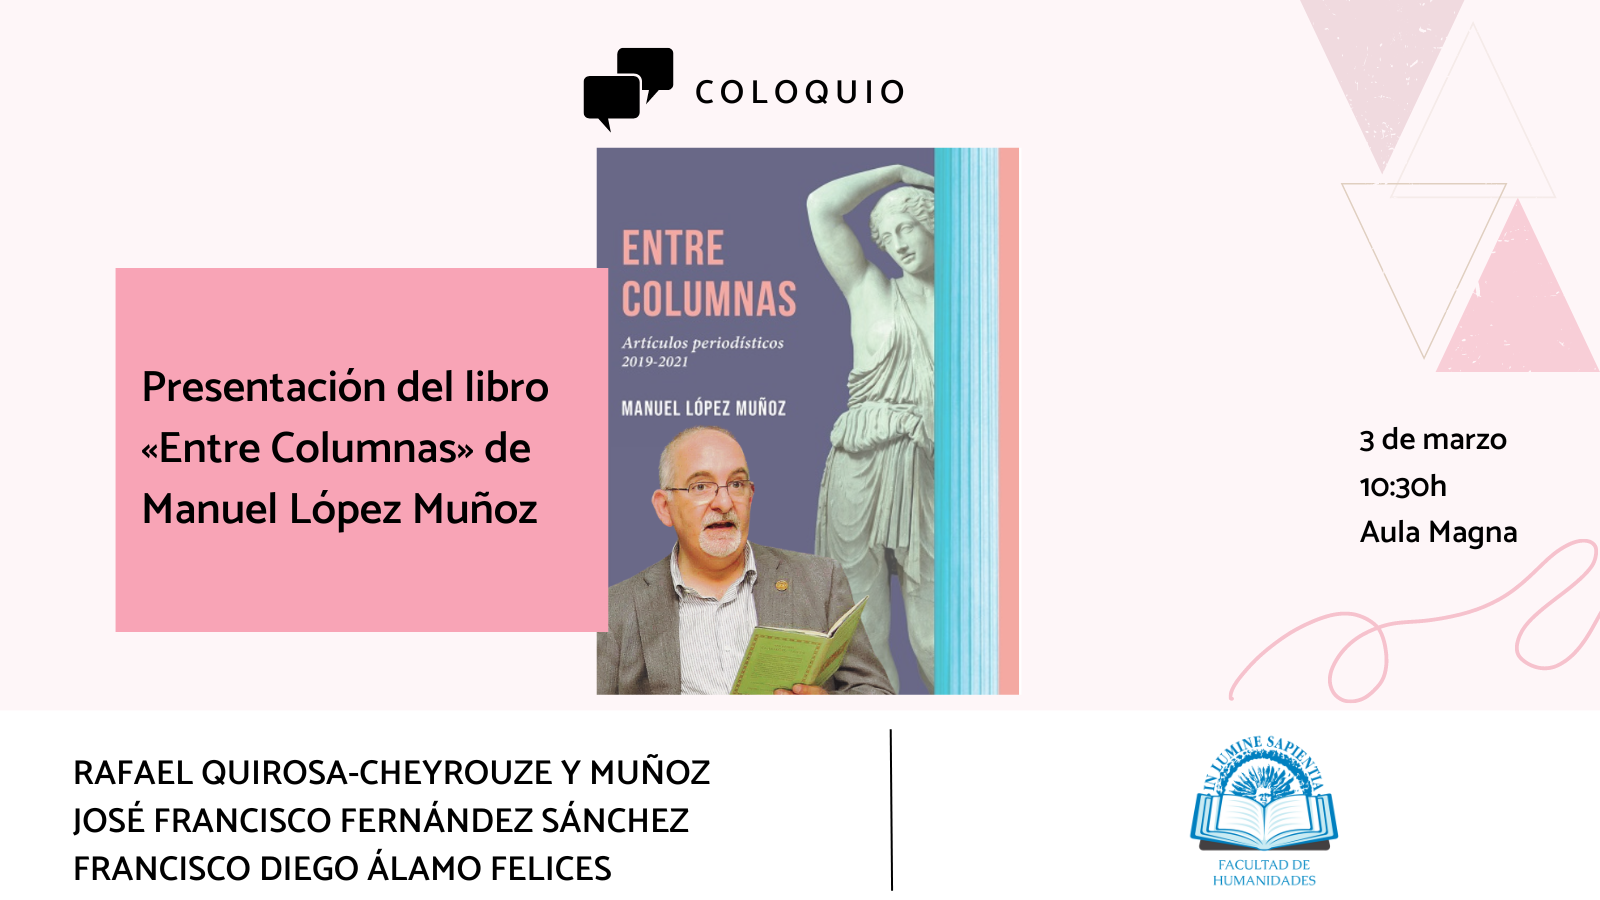 La Facultad de Humanidades y José Francisco Fernández Sánchez organizan la presentación del libro 'Entre Columnas' del Catedrático de Latín de la Universidad de Almería, Manuel López Muñoz.